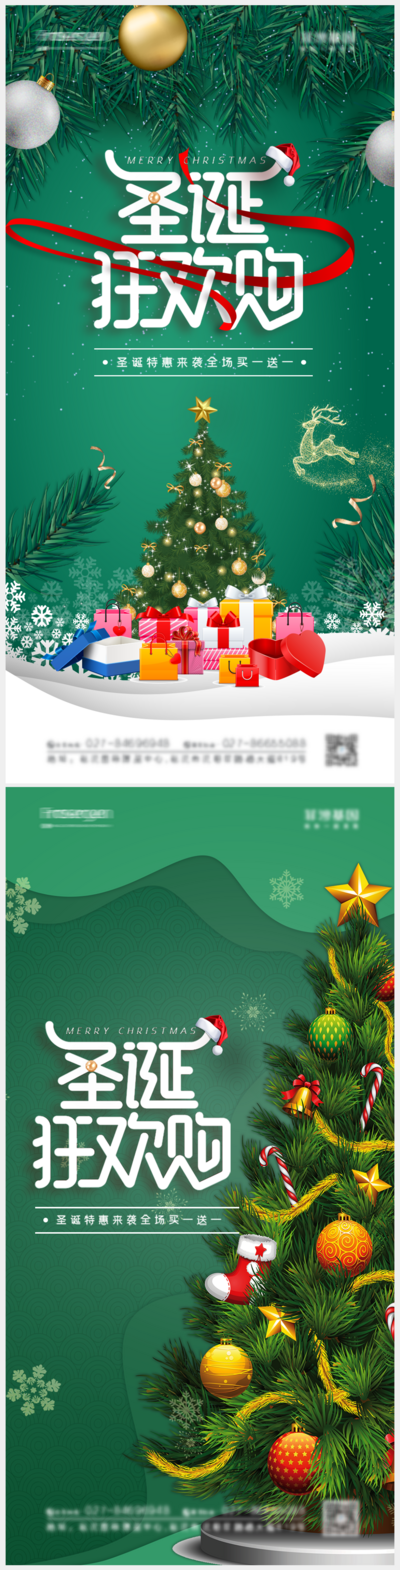 南门网 海报 公历节日 圣诞节 圣诞树 狂欢购 促销 活动 系列